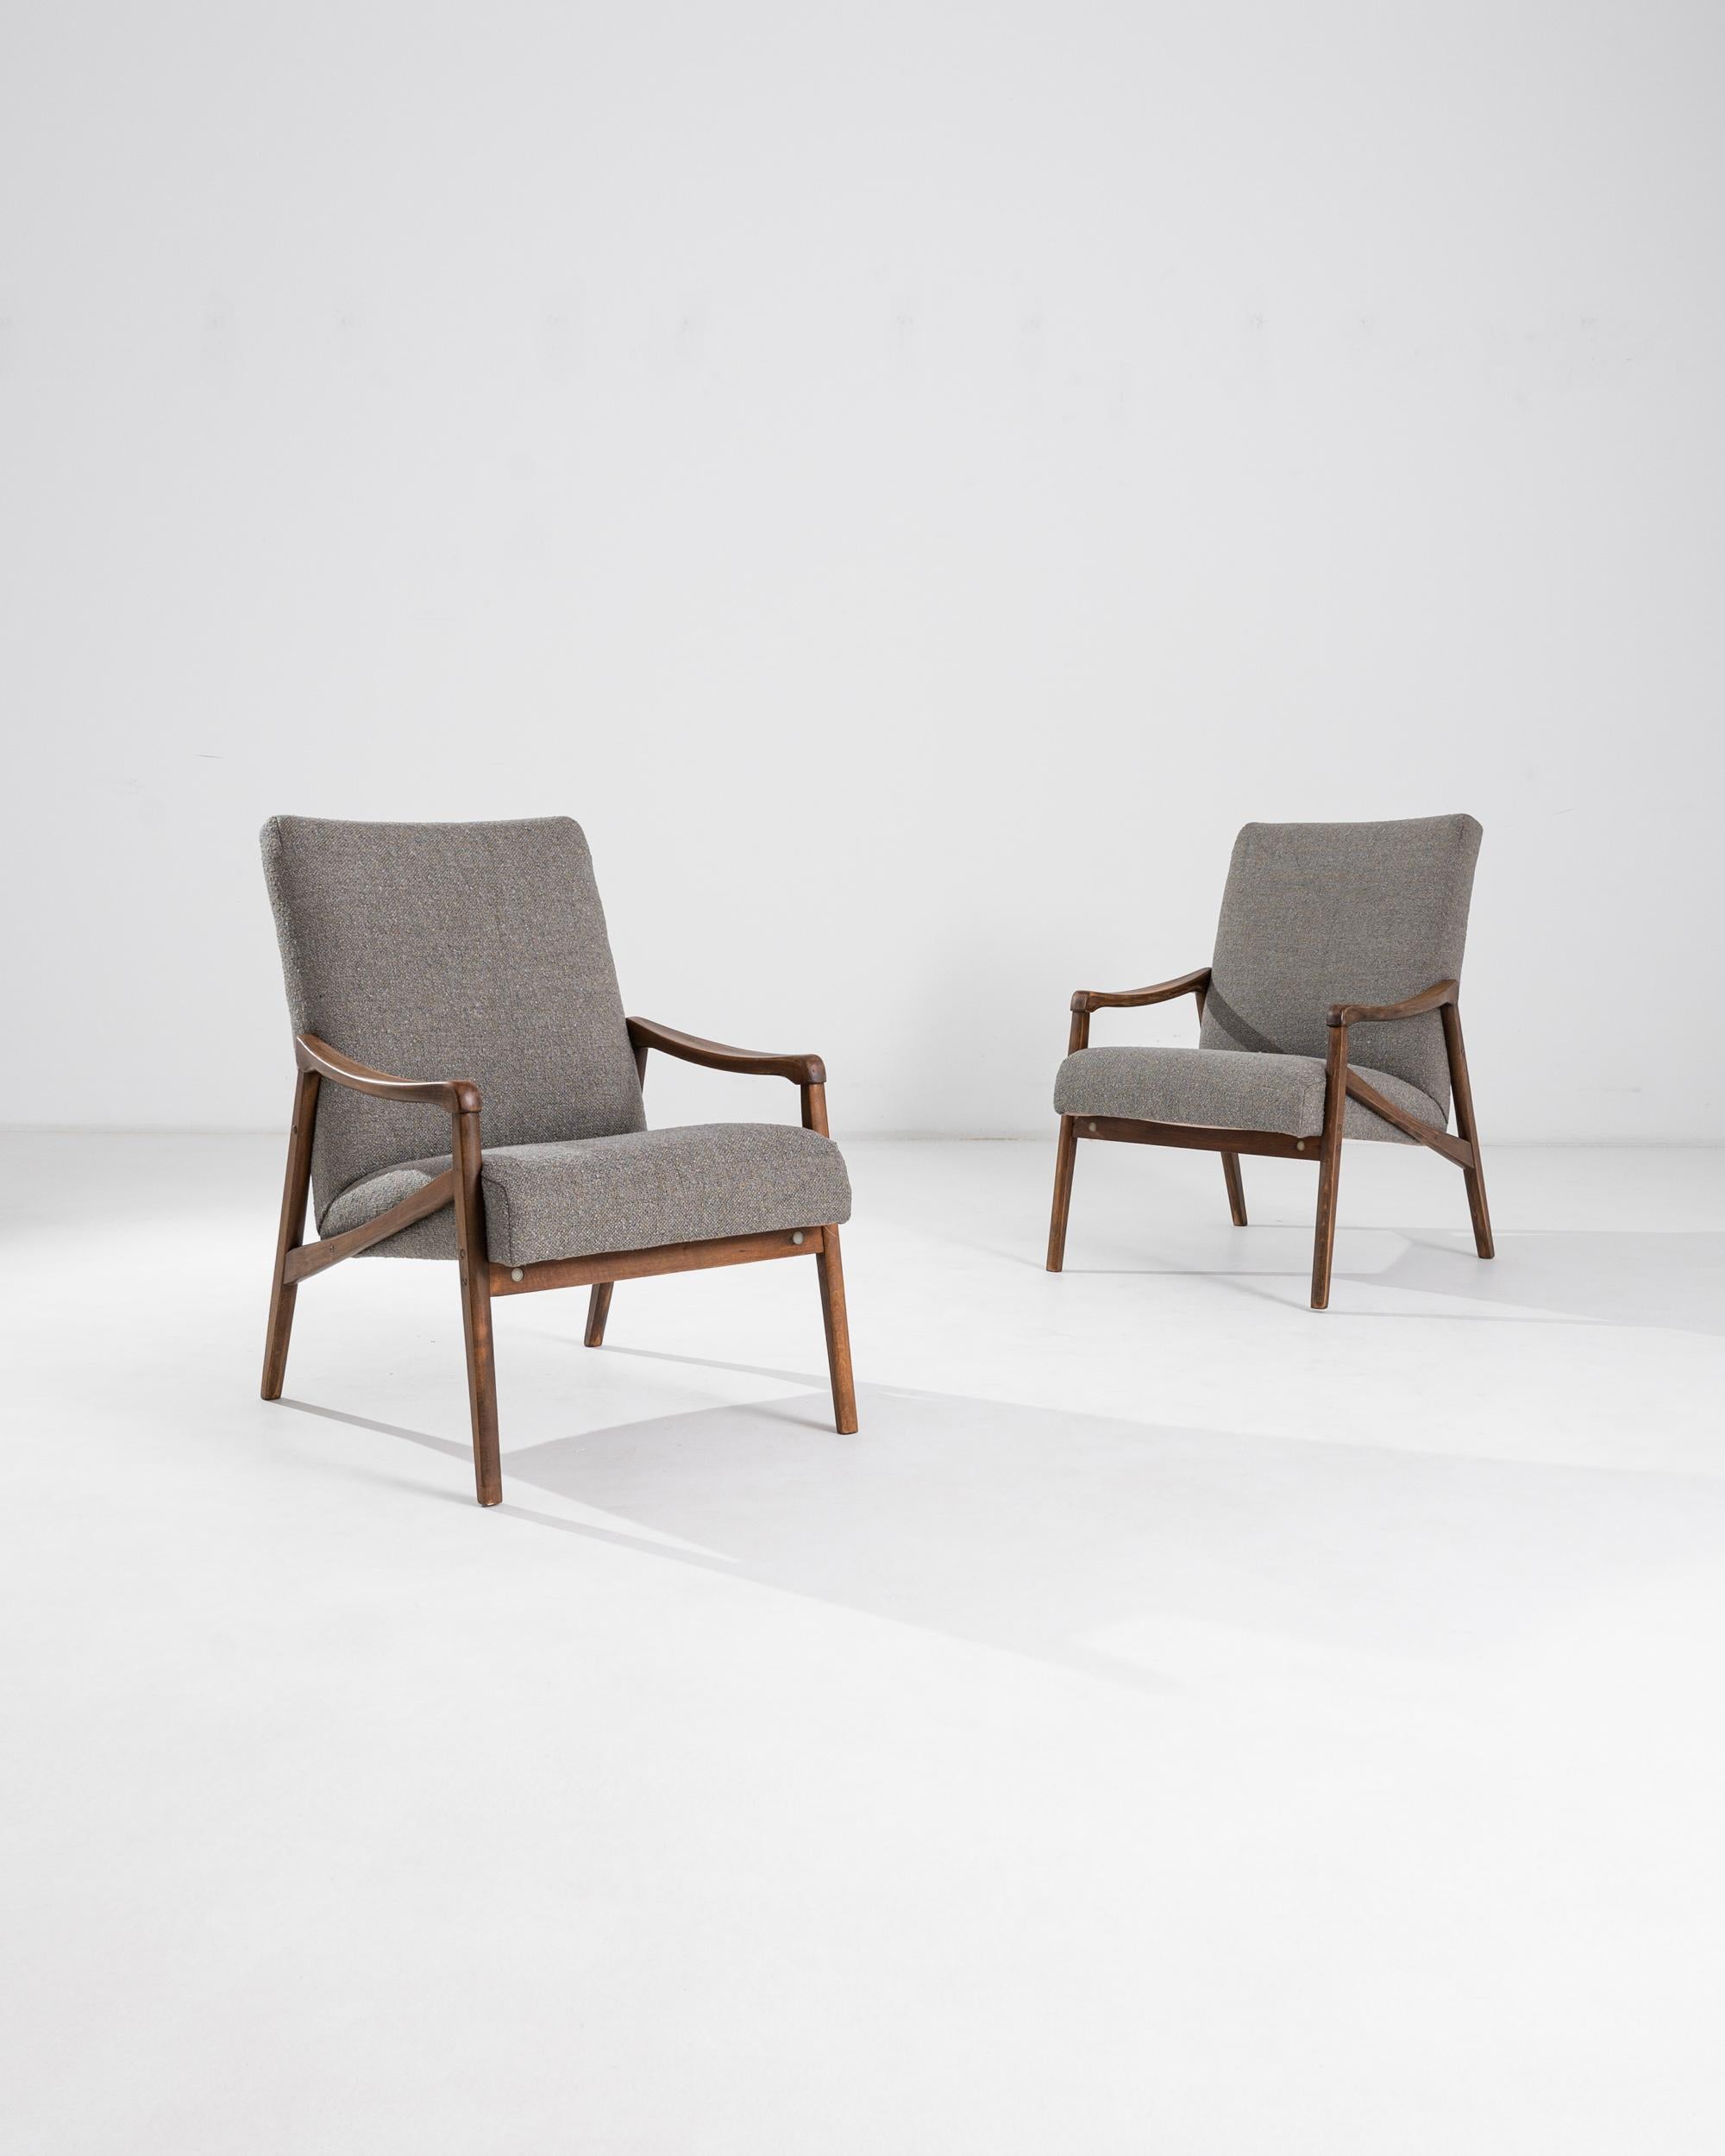 Ein Paar Sessel, das in der ehemaligen Tschechoslowakei hergestellt wurde. Der Entwurf stammt von Jiri Jiroutek. Dieses Design aus den 1960er Jahren wurde mit einem aktualisierten taupefarbenen Bouclé-Bezug neu gepolstert; der neutrale Farbton wurde